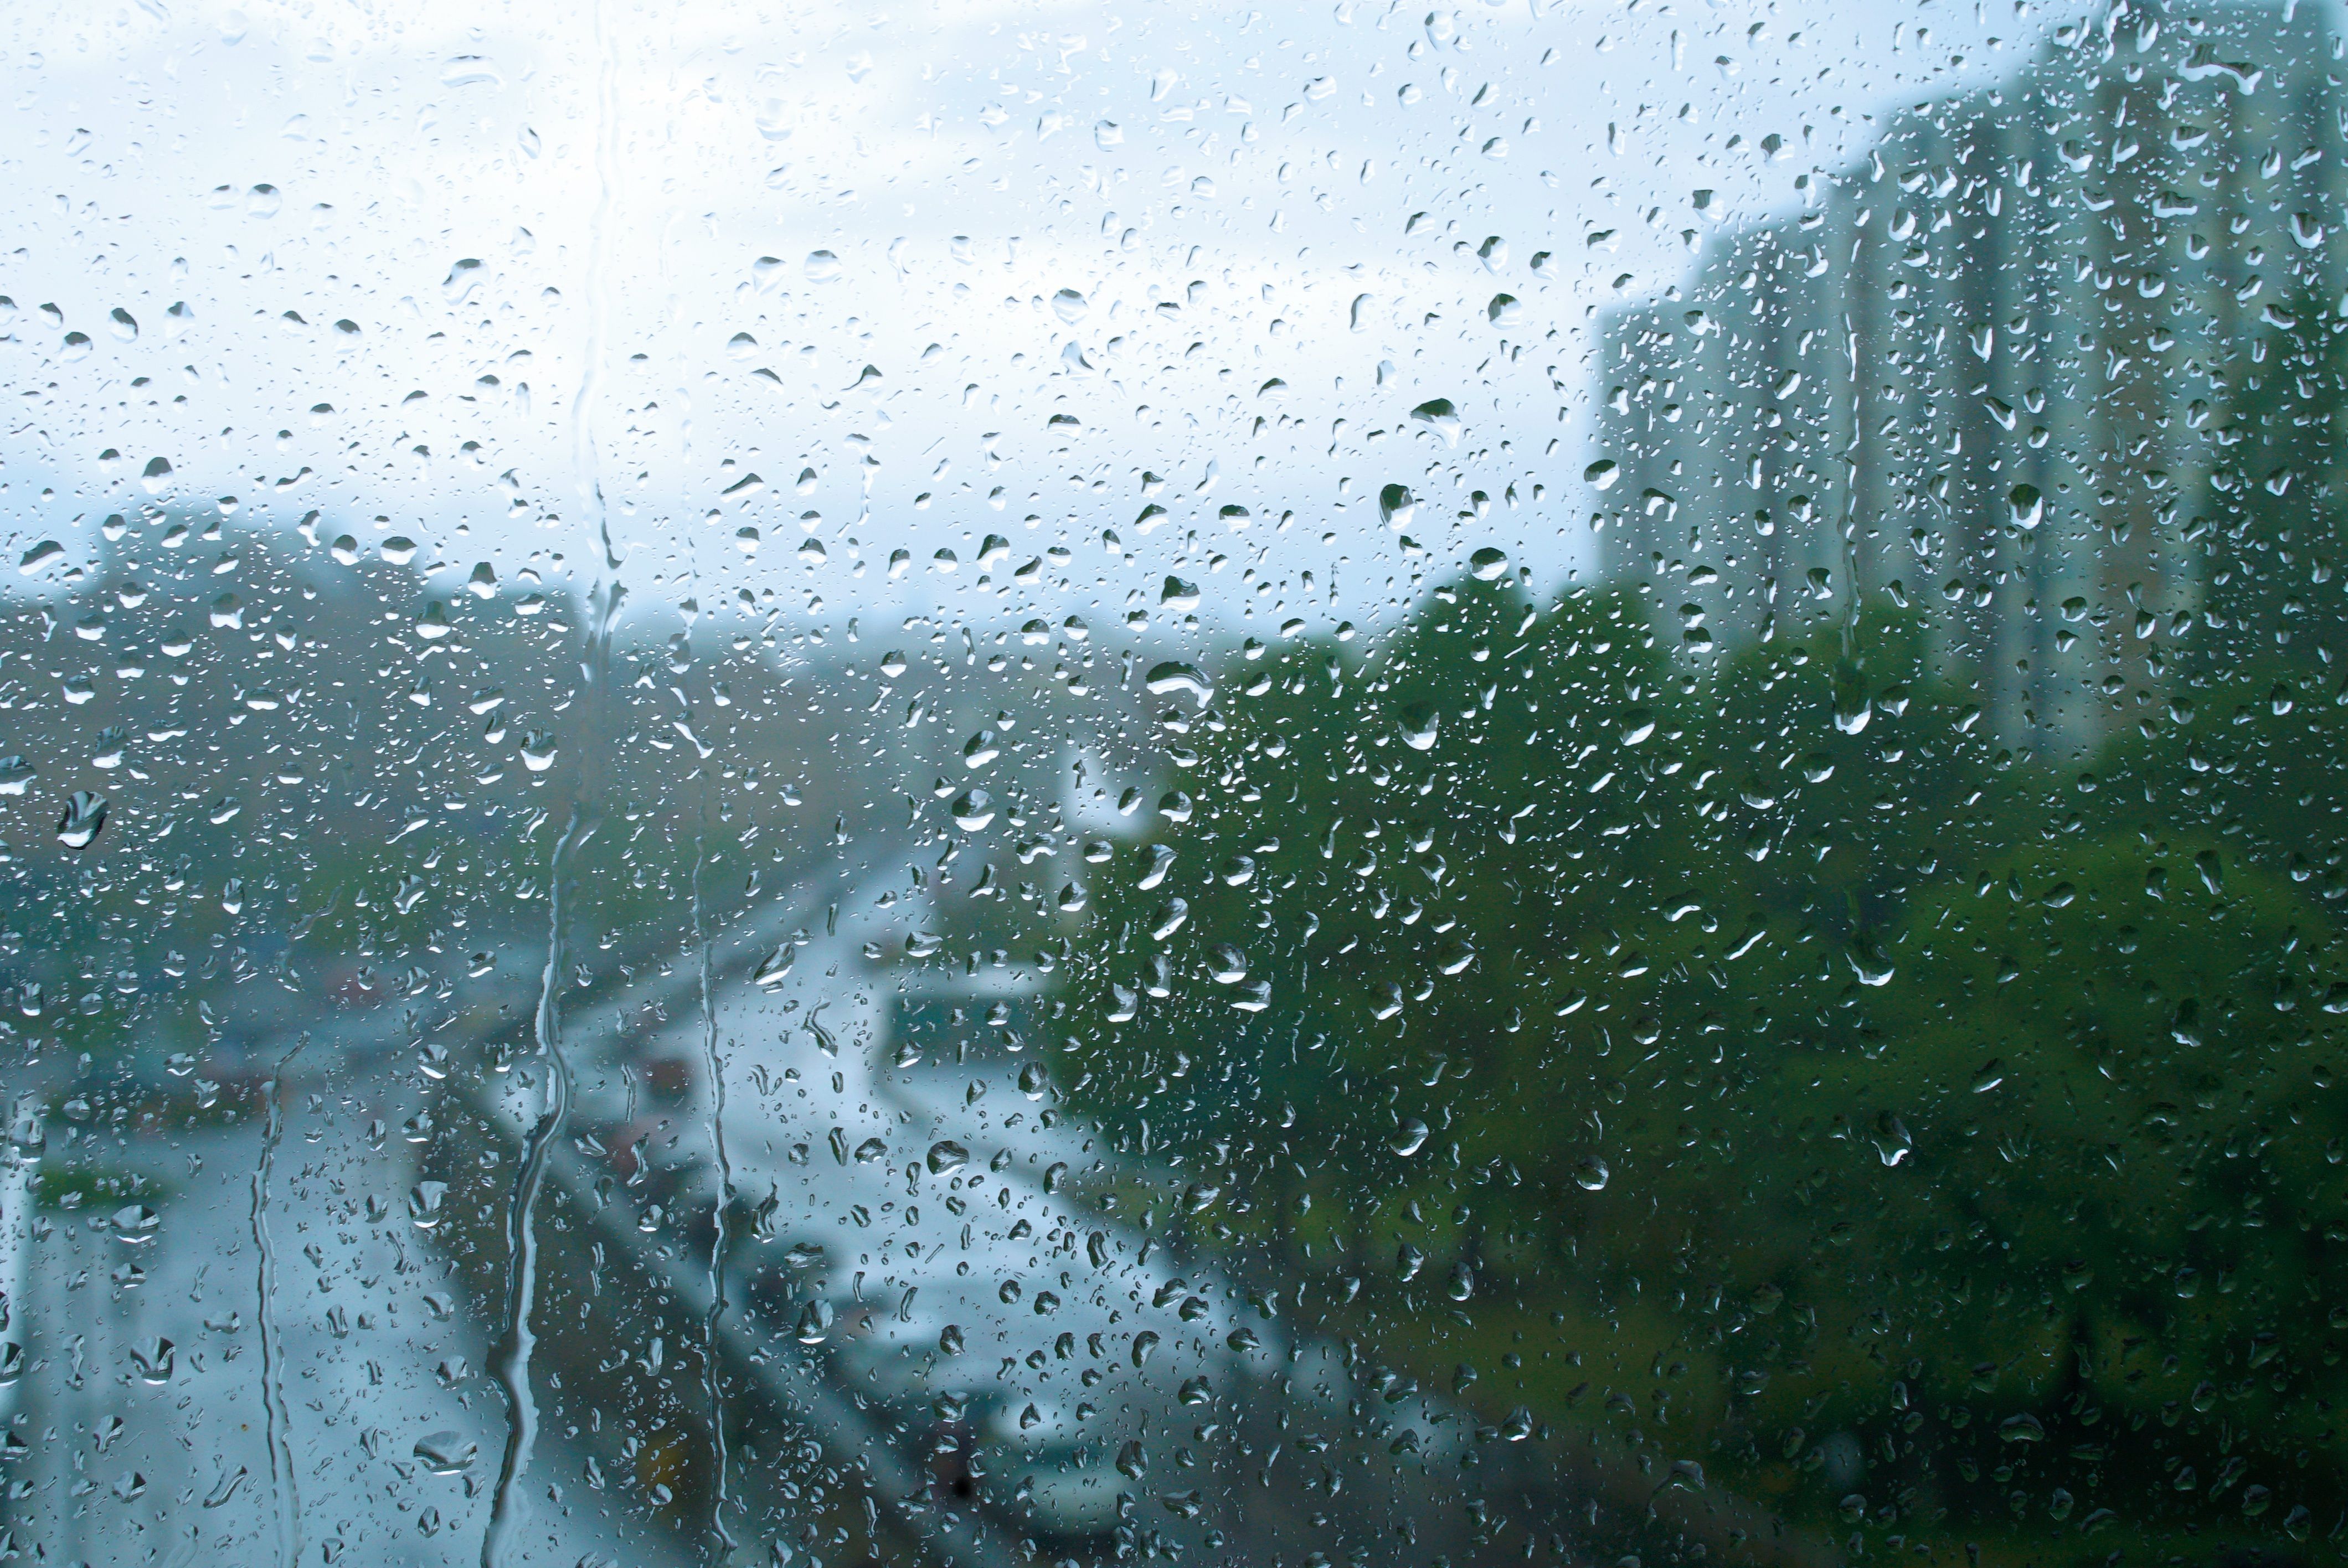 Rain on a window 4k Ultra HD Wallpaper